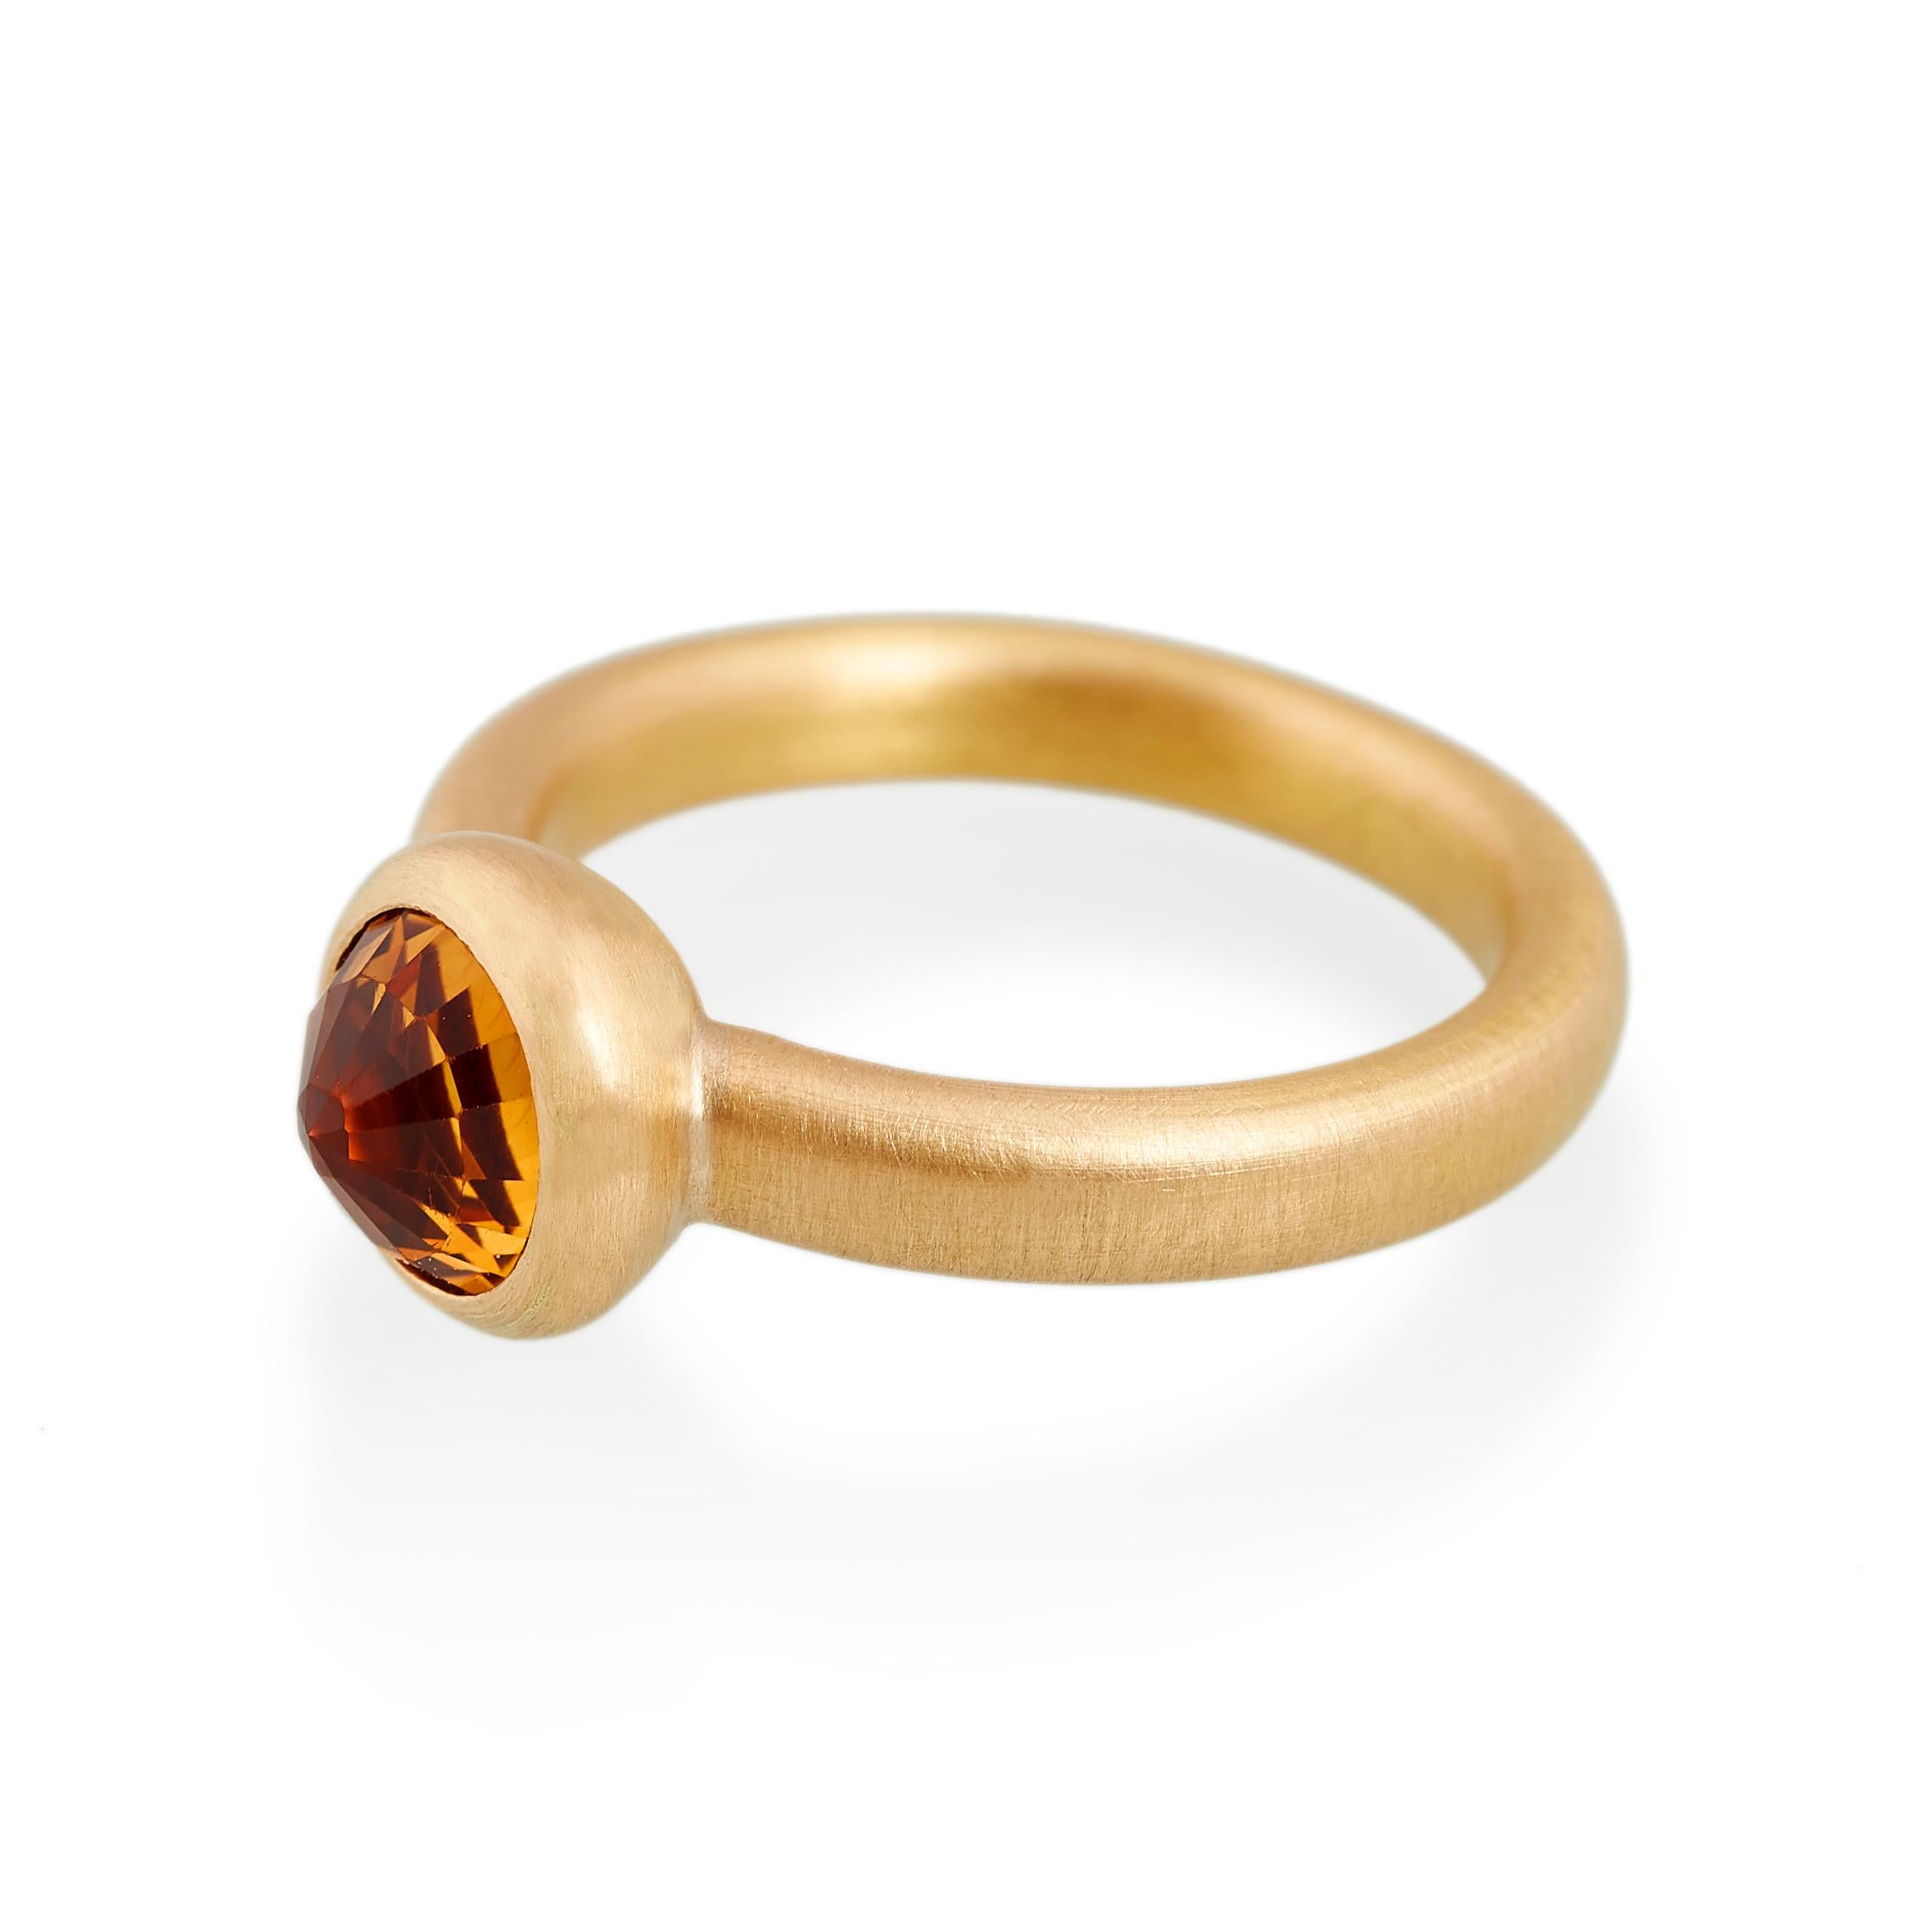 Ring mit facettiertem Citrin.
Ref: G18001

8mm runder Citrin
22 Karat Gold

Cadby & Co ist ein Familienunternehmen, das sich auf die Wiederverwendung und das Upcycling von alten geschliffenen Diamanten und Edelsteinen spezialisiert hat. Deborah